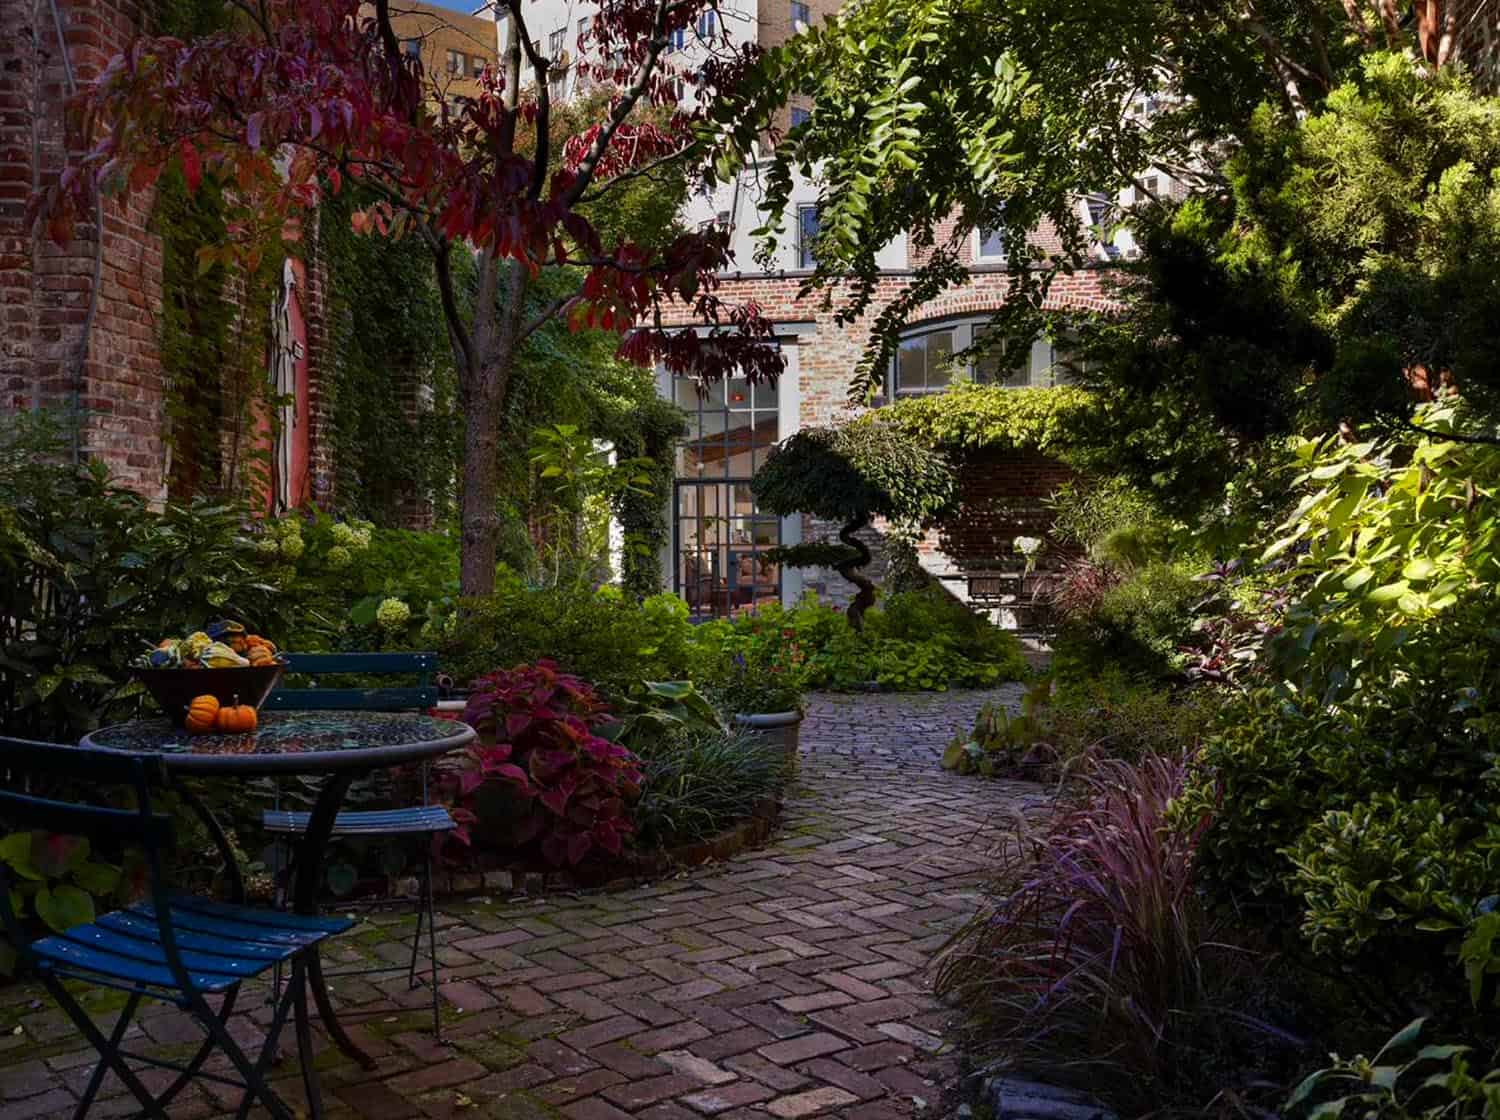 Beautiful backyard courtyard